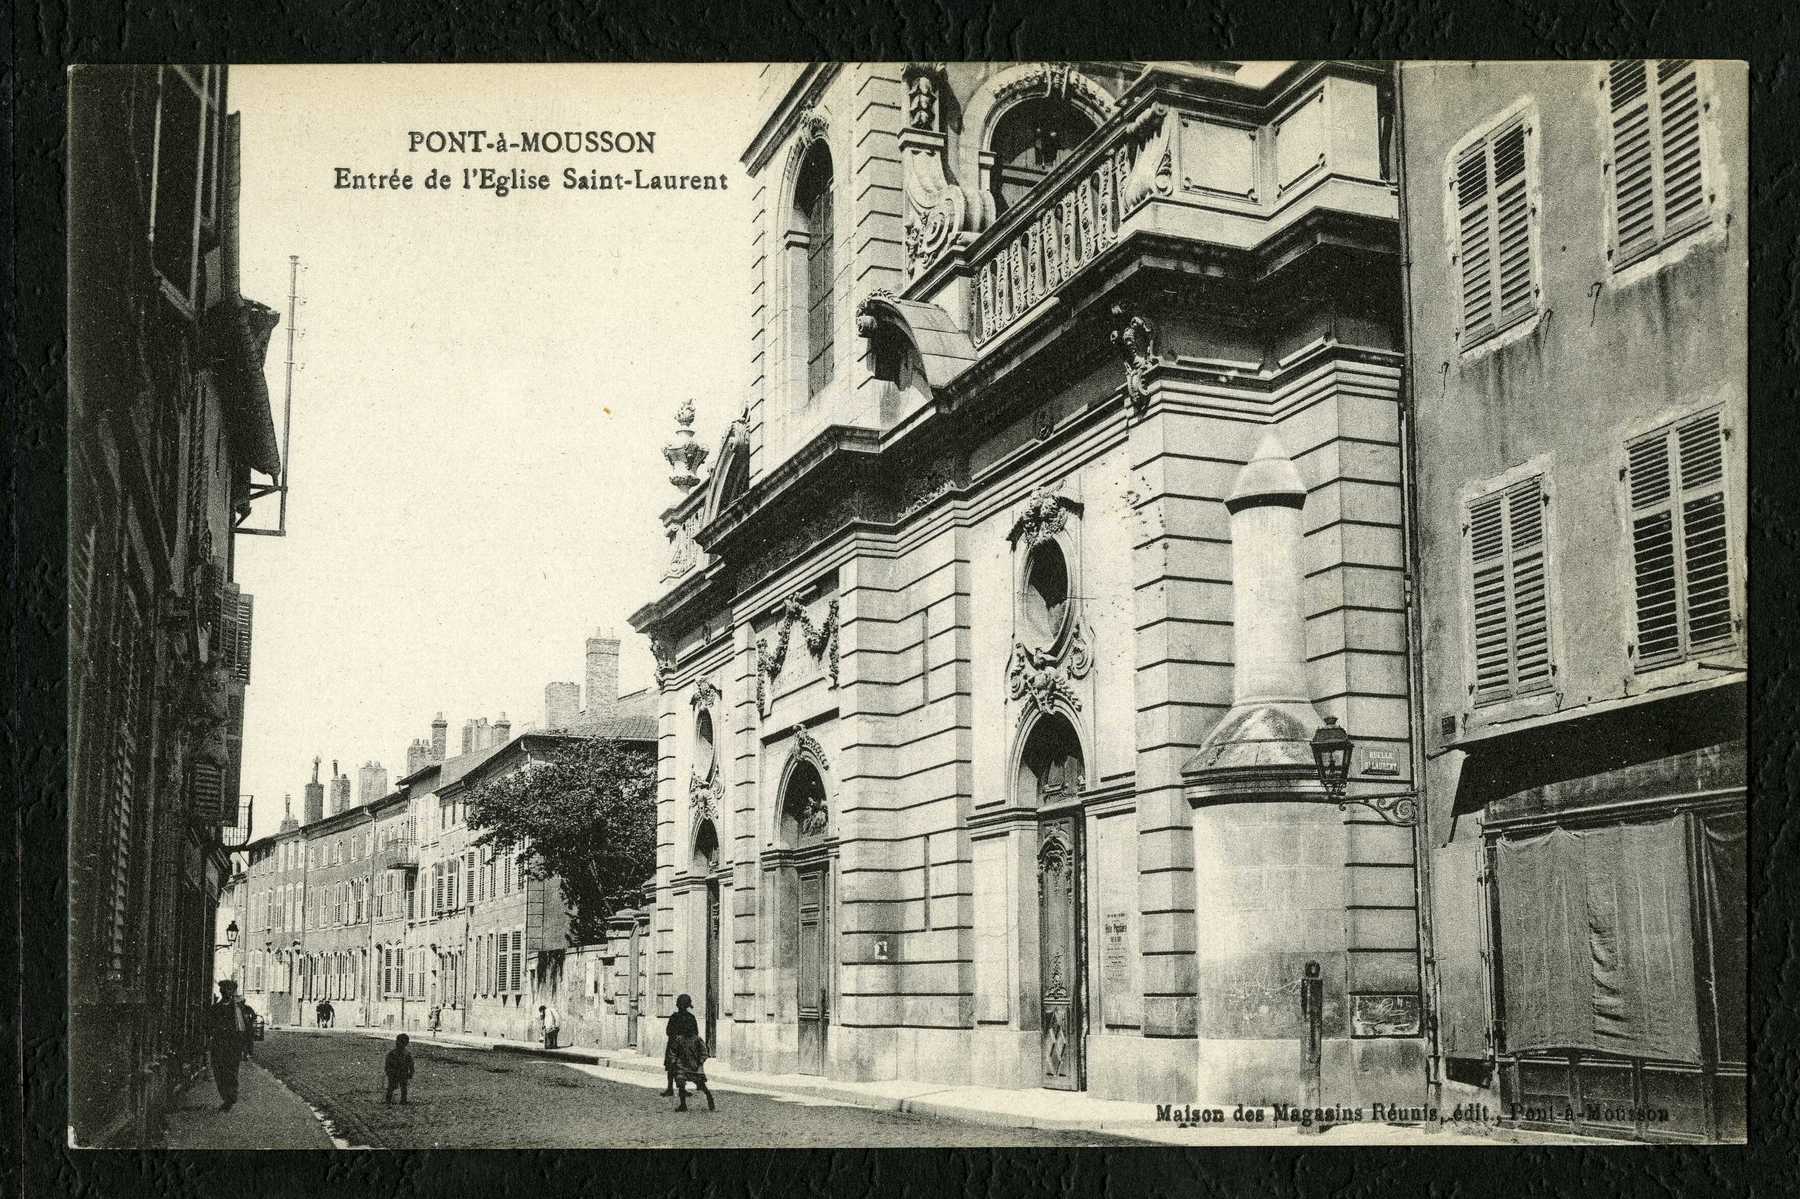 Contenu du Pont-à-Mousson : entrée de l'église Saint-Laurent